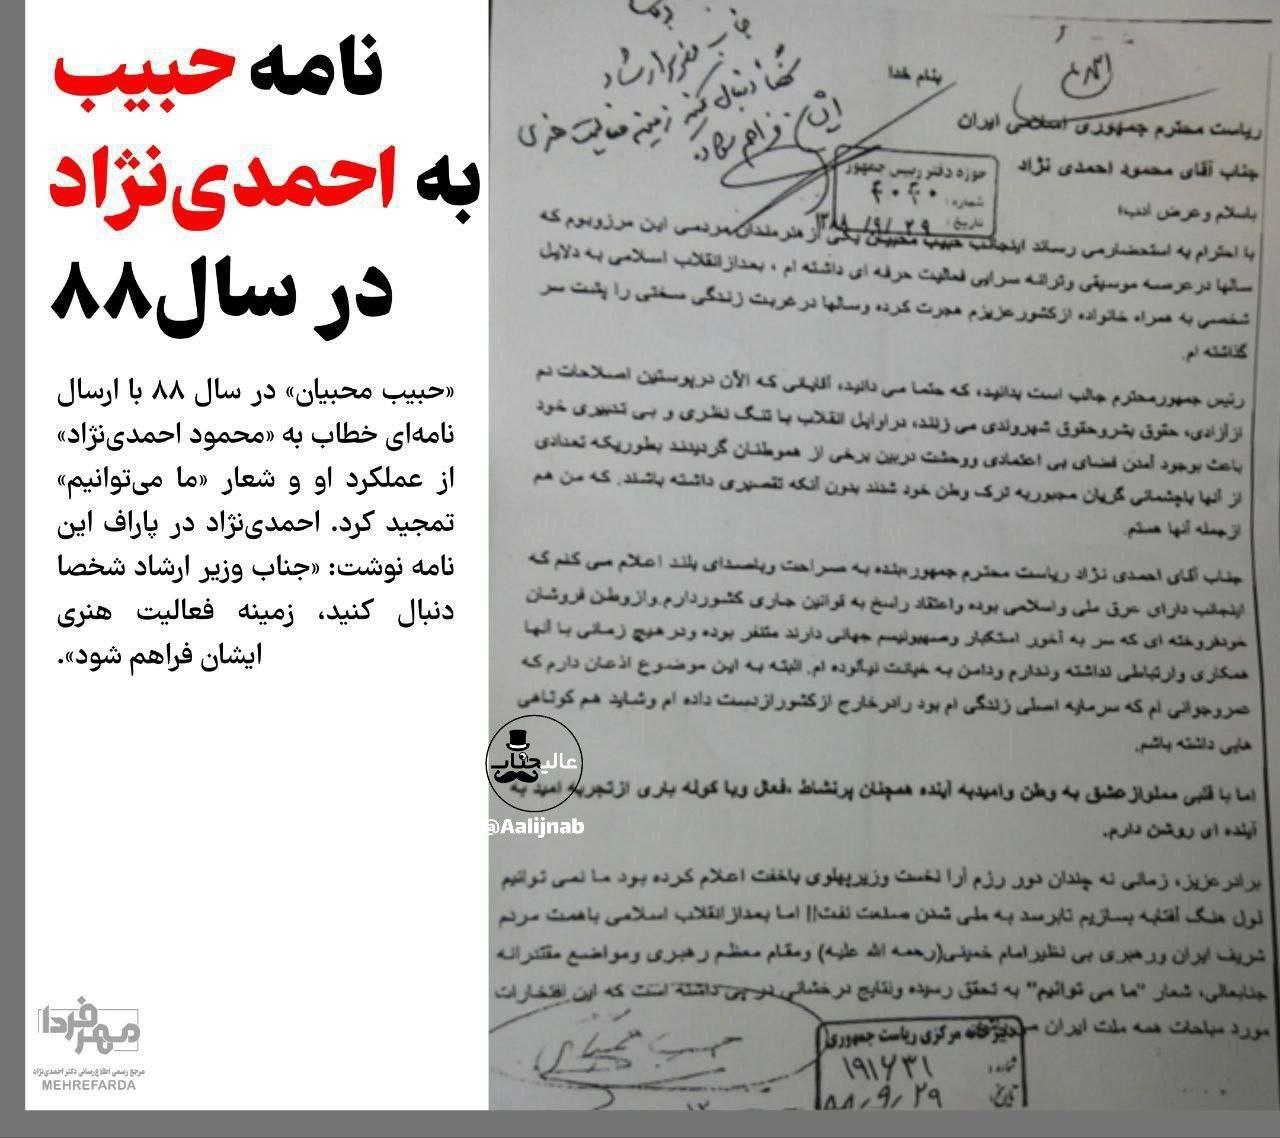 نامه حبیب به احمدی نزاد